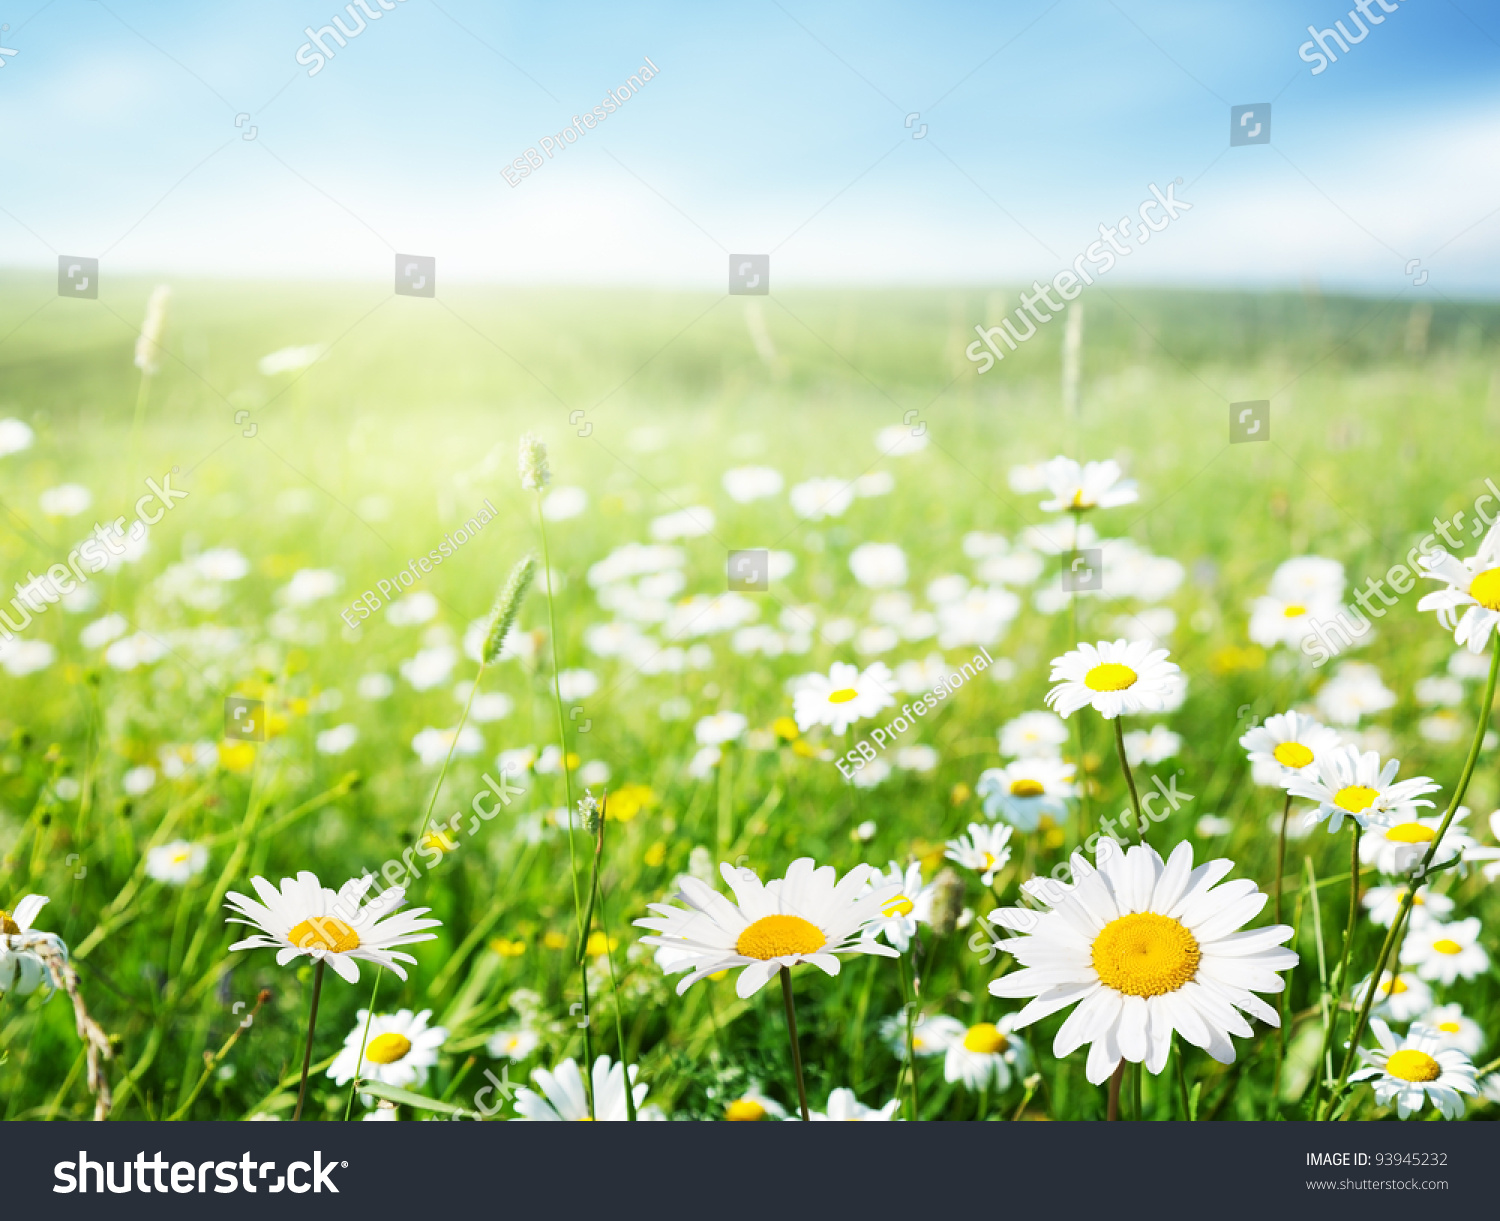 field of daisy flowers #93945232